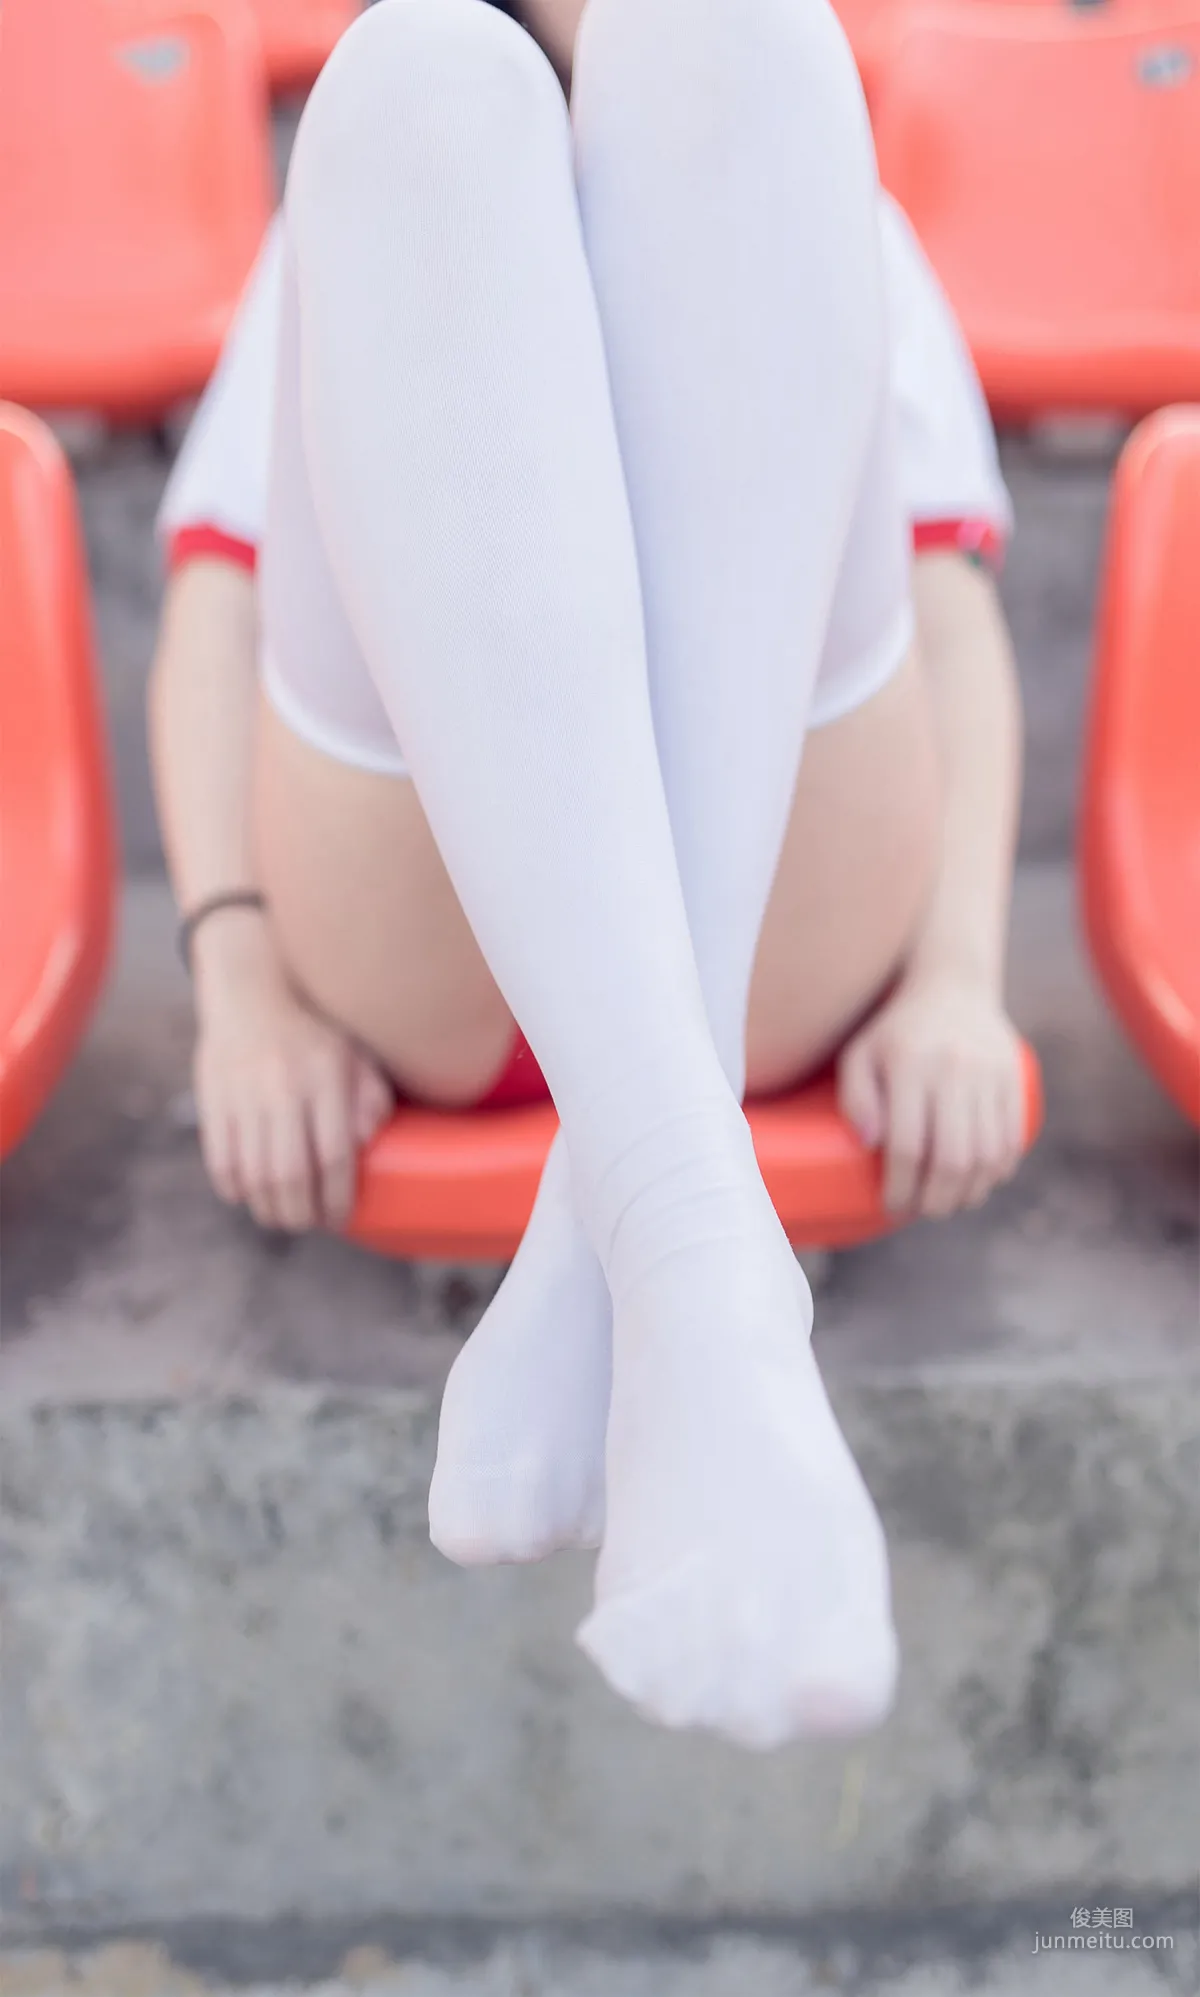 [风之领域] NO.112 运动场上的白丝体操服少女 写真集25